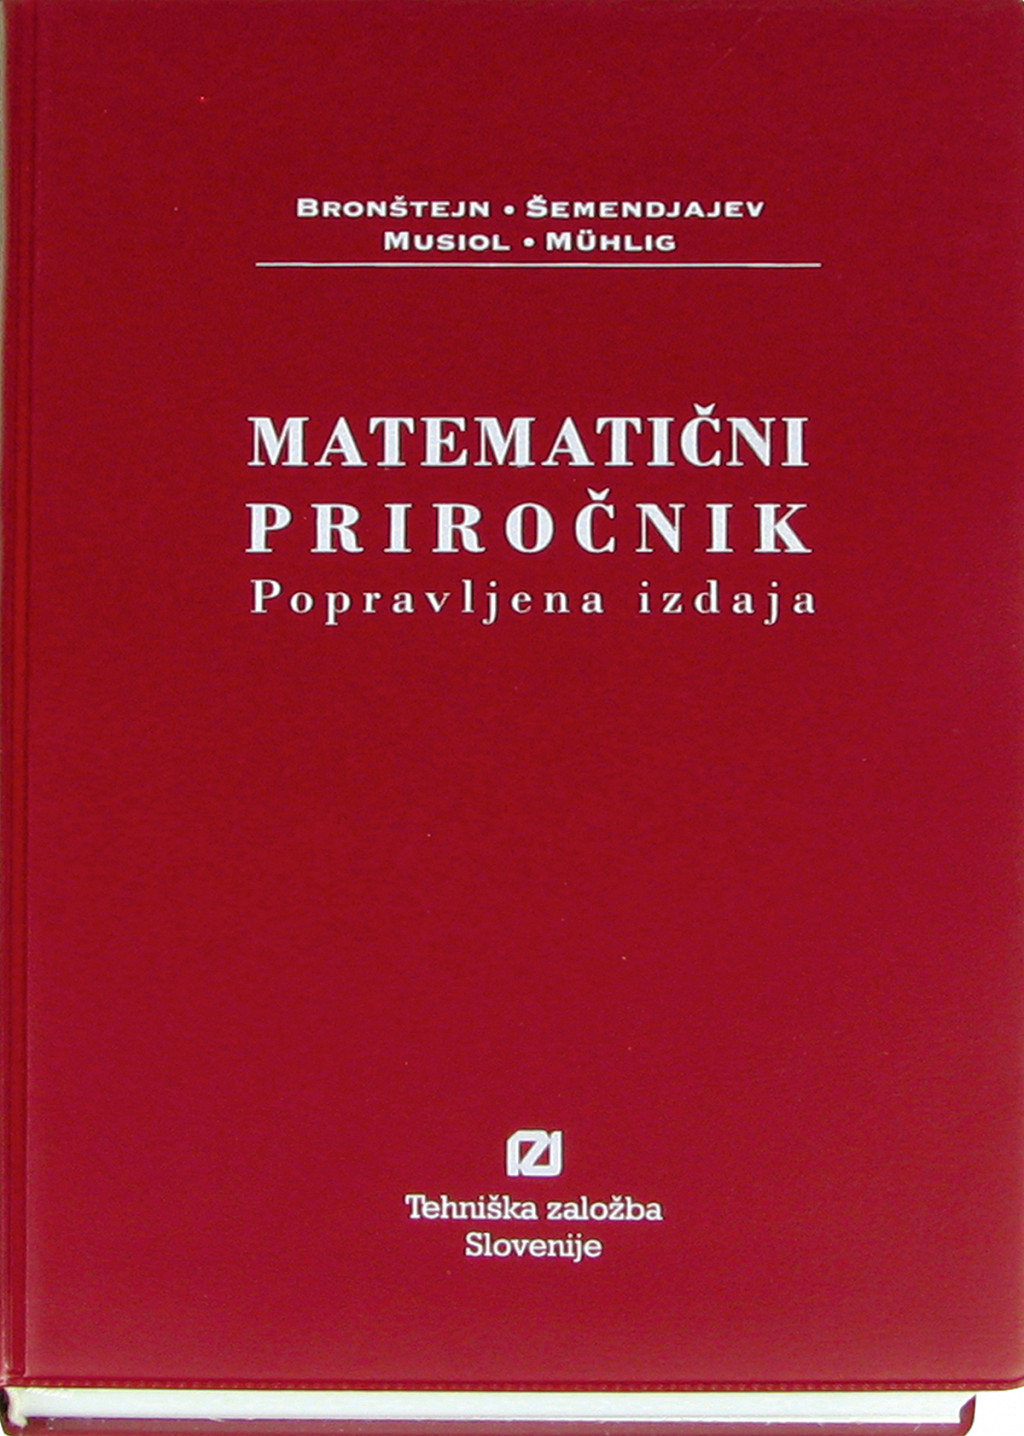 Matematični priročnik Bronštejn (popravljena izdaja)